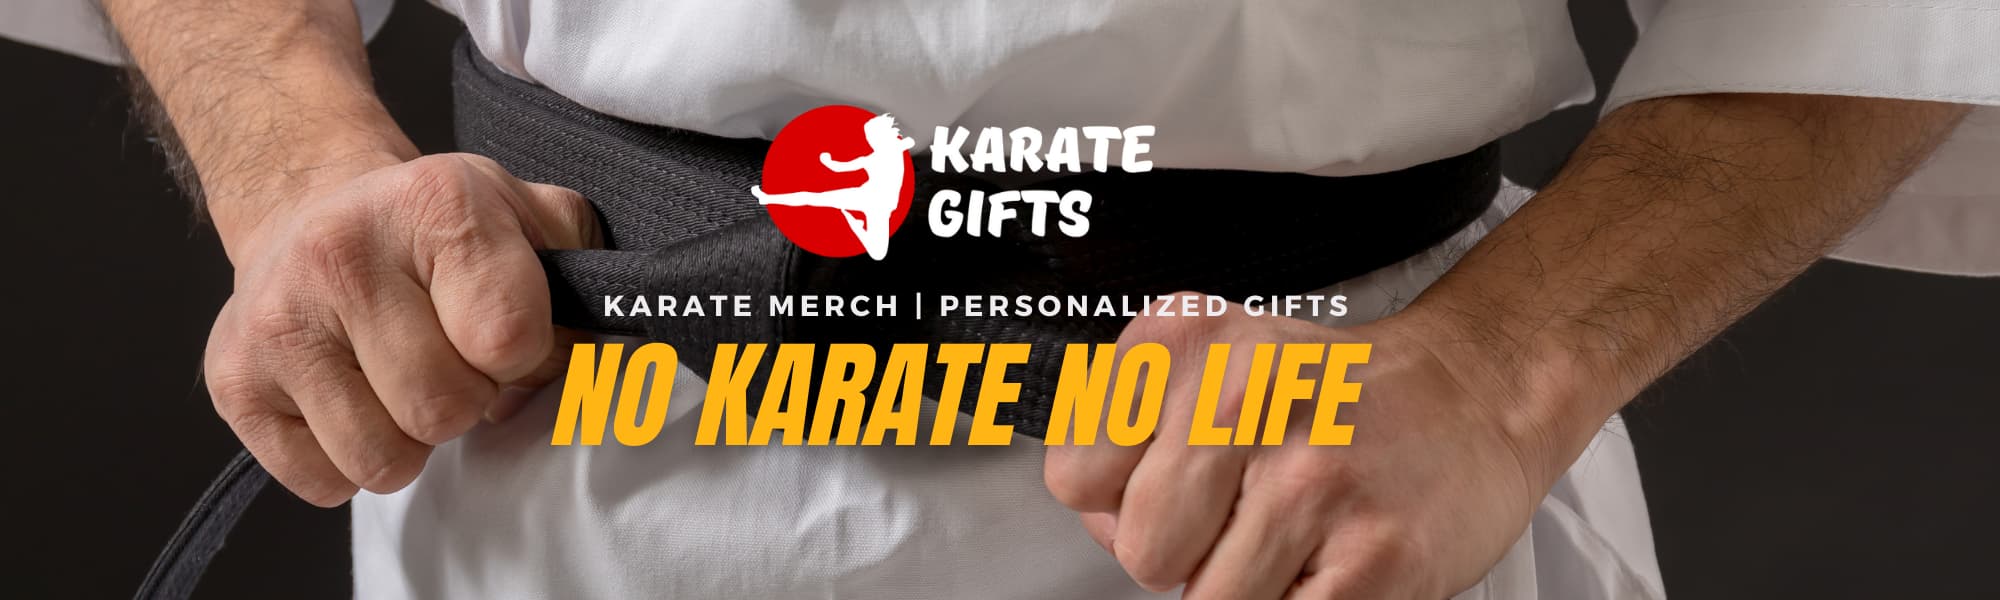 karate main banner